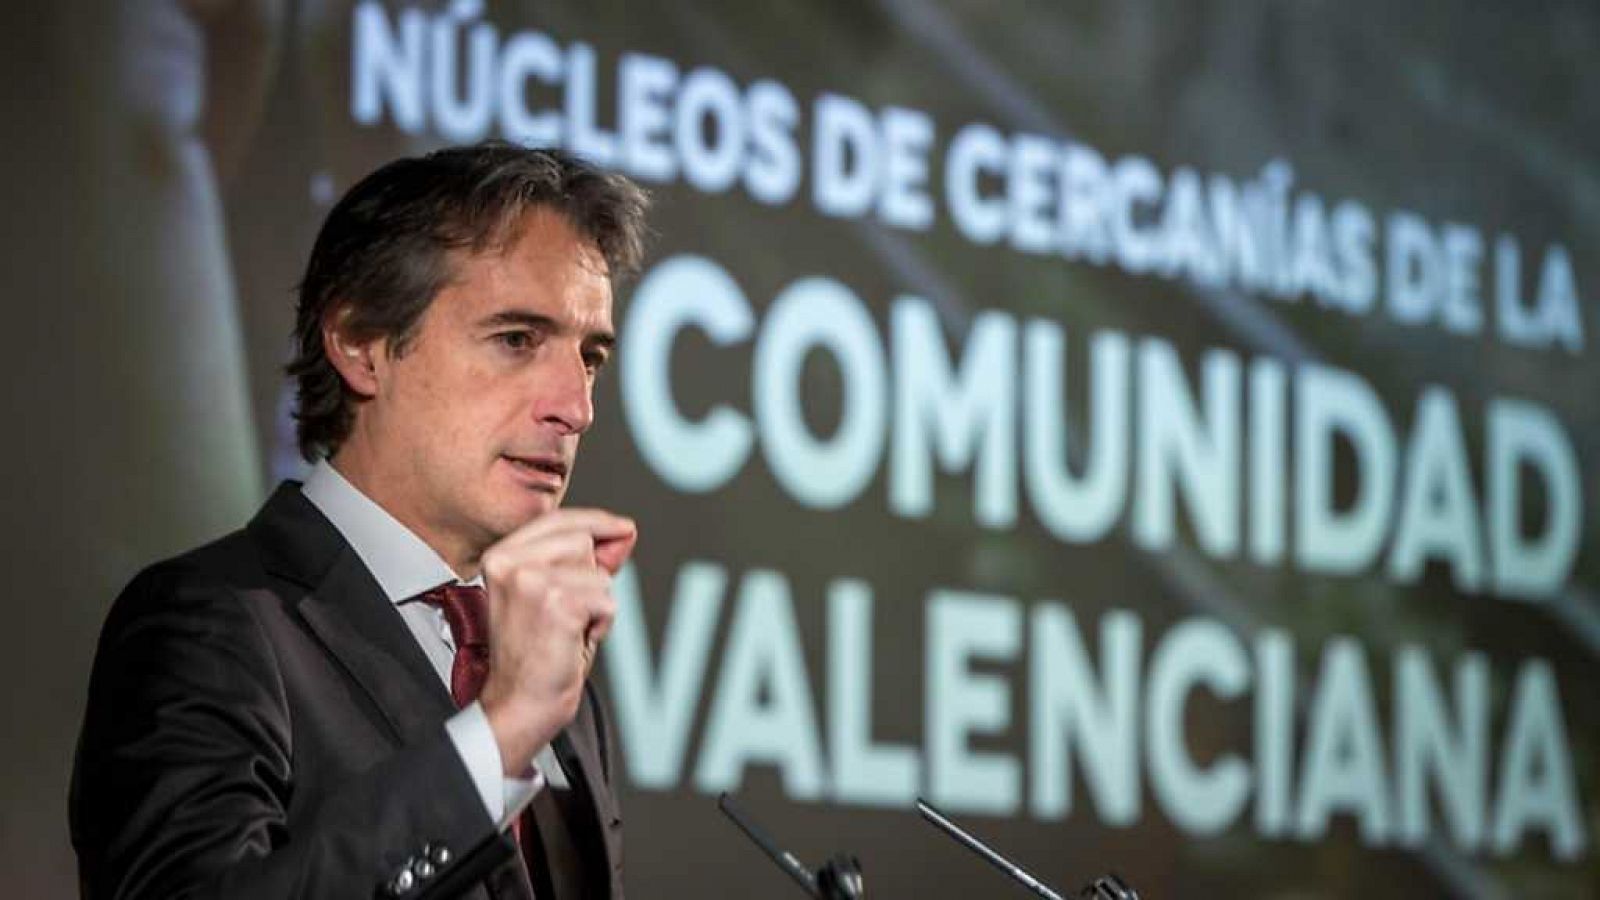 L'informatiu - Comunitat Valenciana: L'Informatiu - Comunitat Valenciana - 18/12/17  | RTVE Play